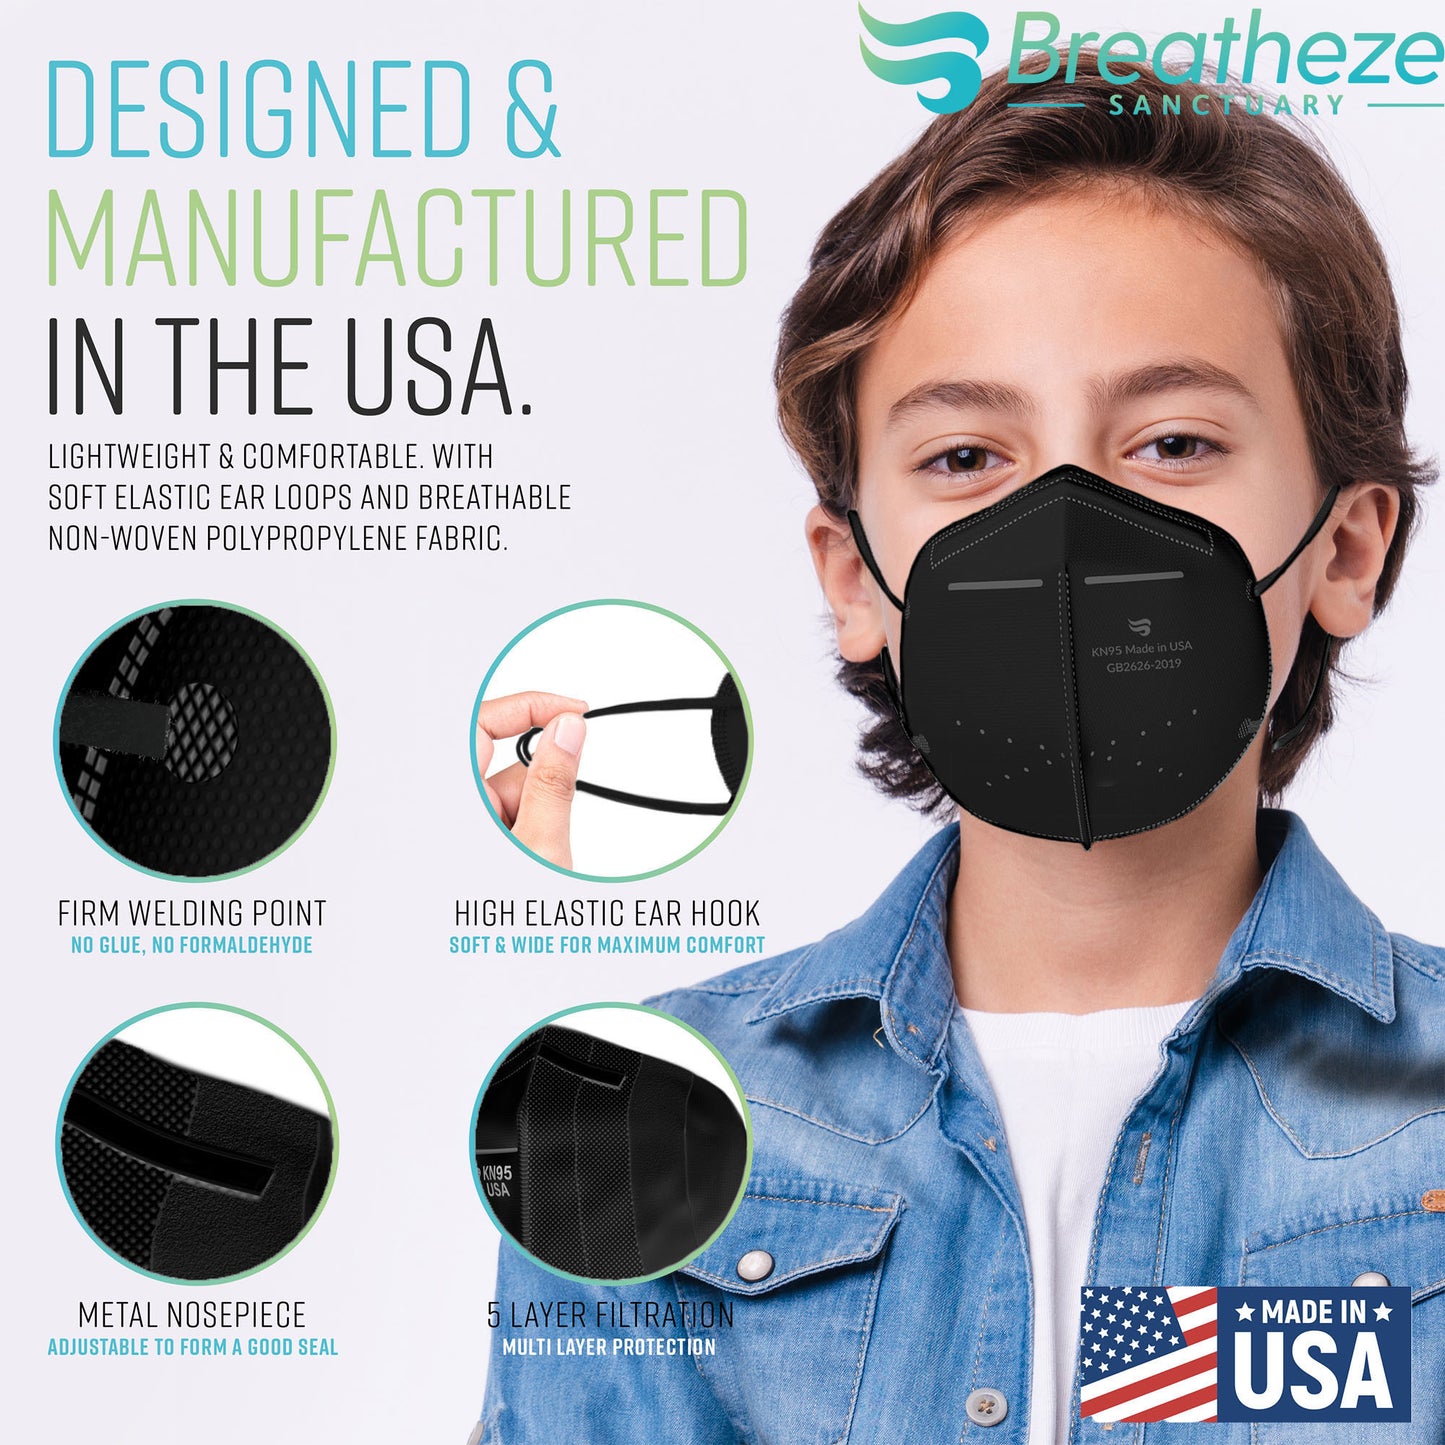 Breatheze by Sanctuary Kids KN95 Face Mask